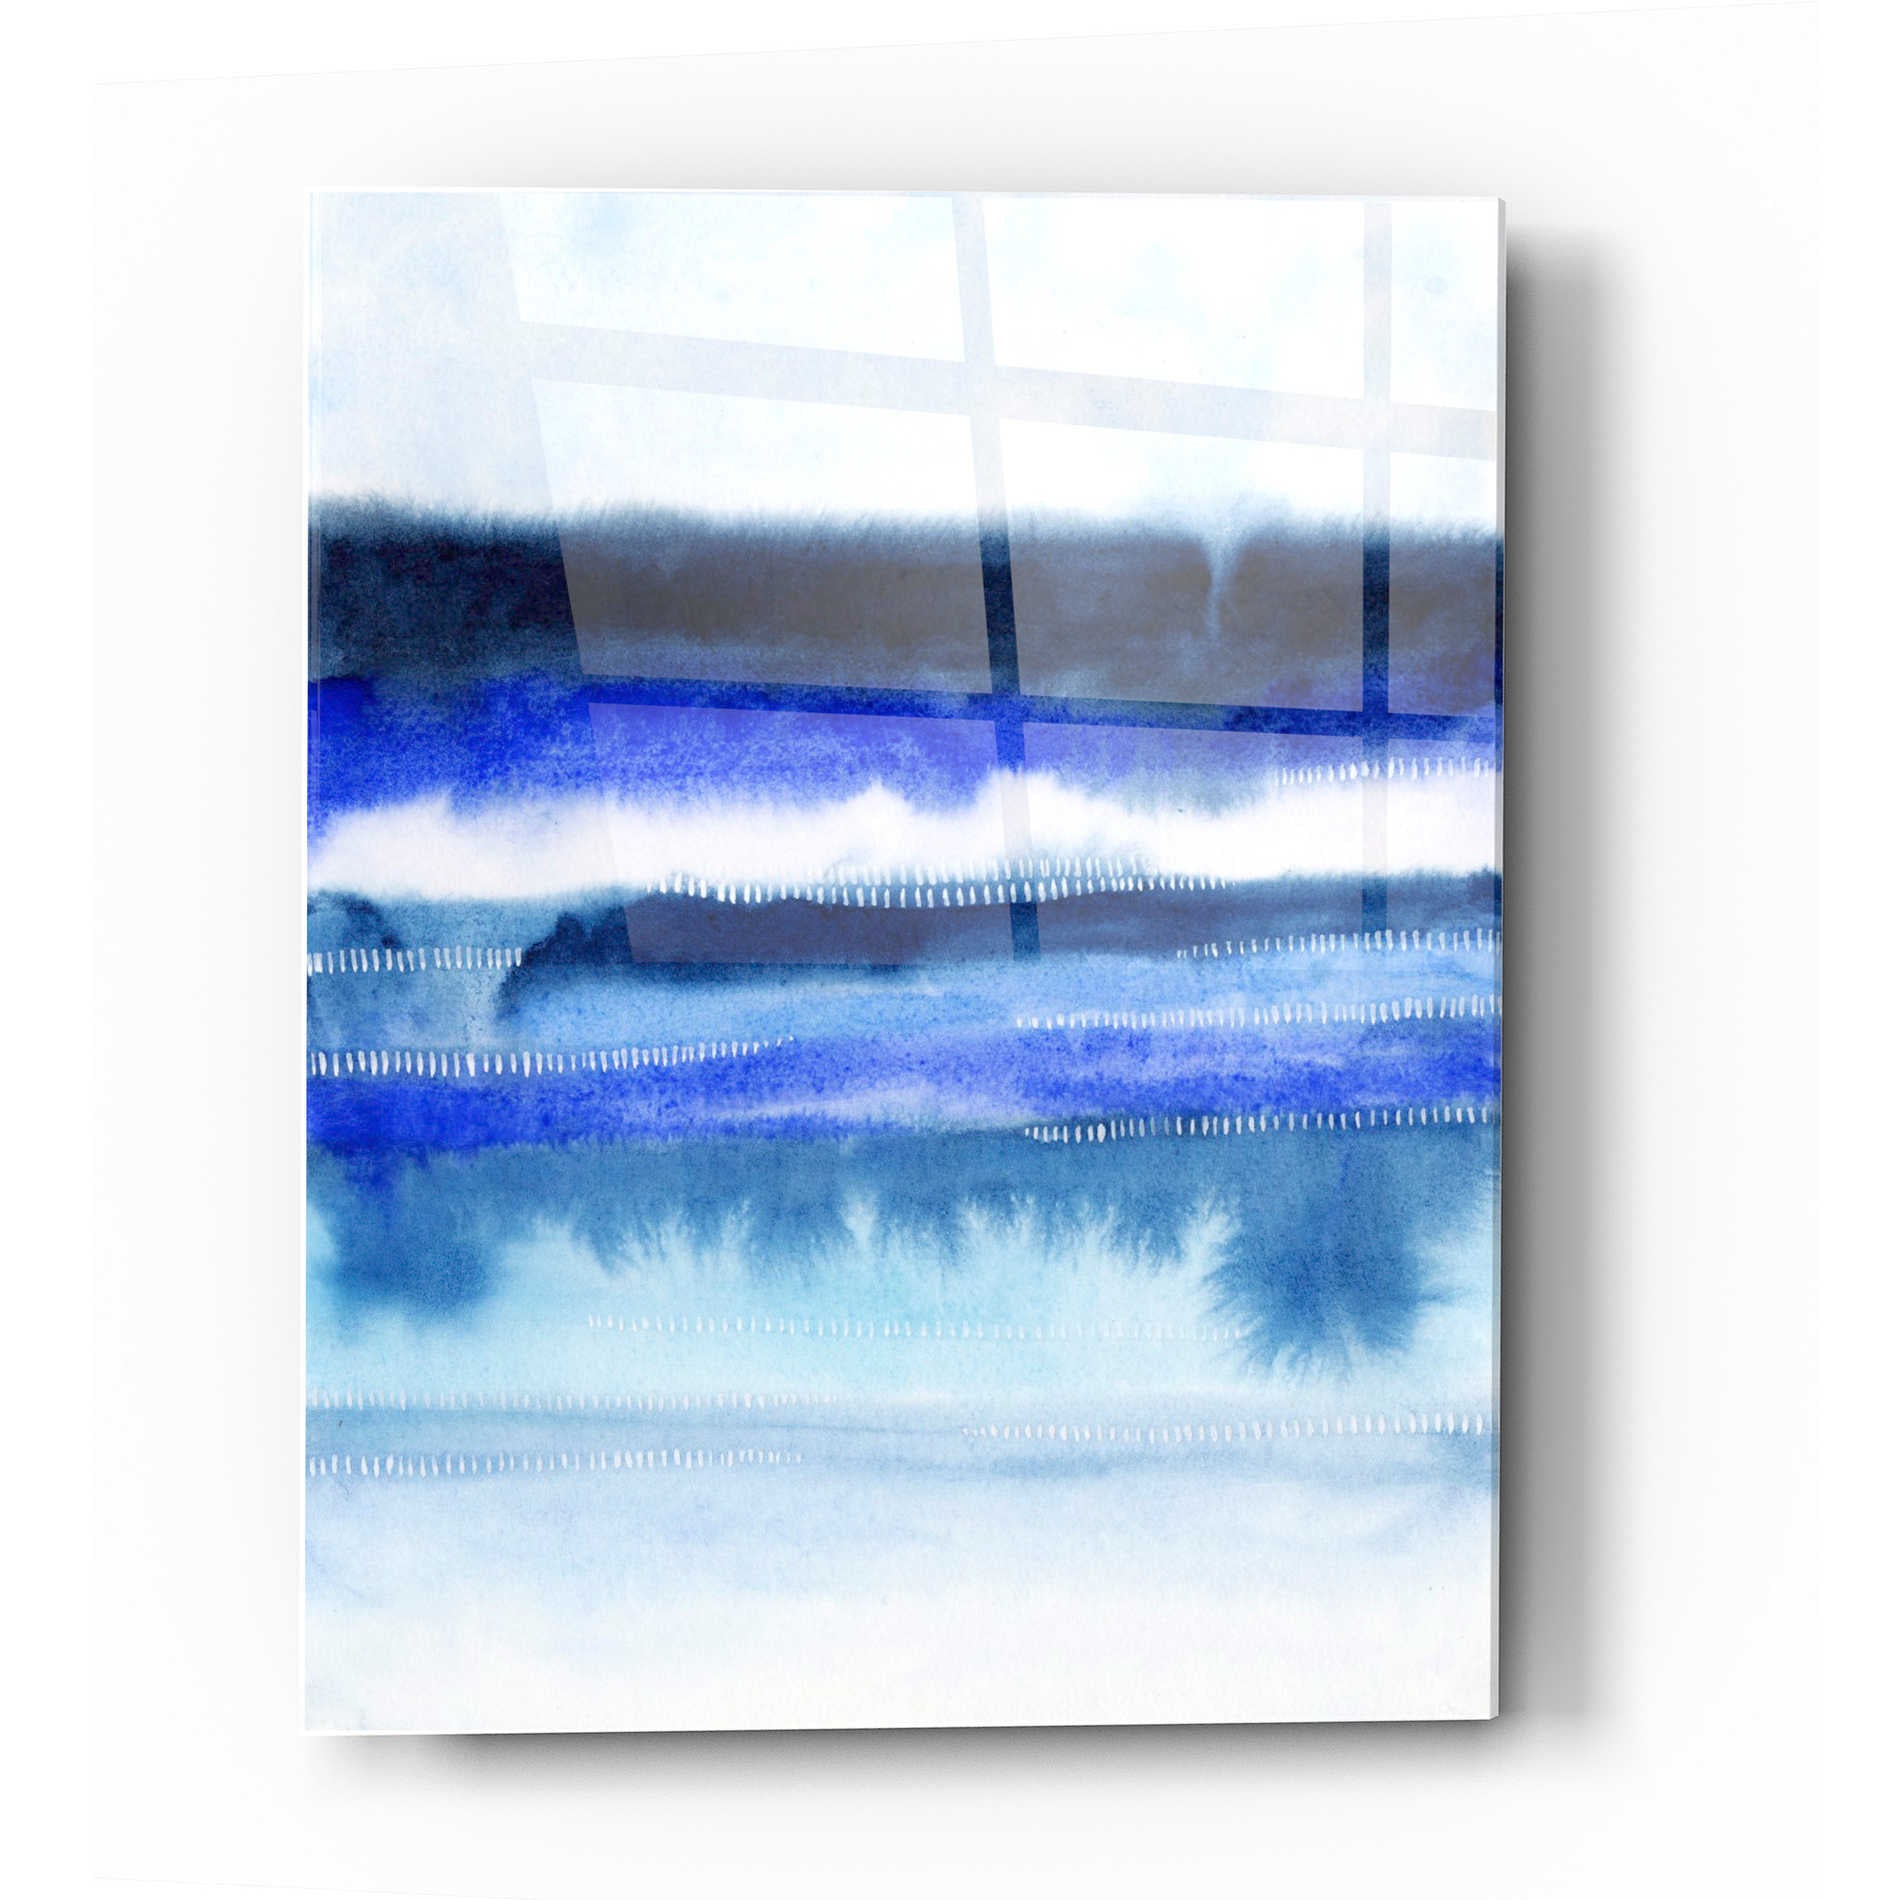 Epic Art 'Shorebreak Abstract II' by Grace Popp Acrylic Glass Wall Art,24x36